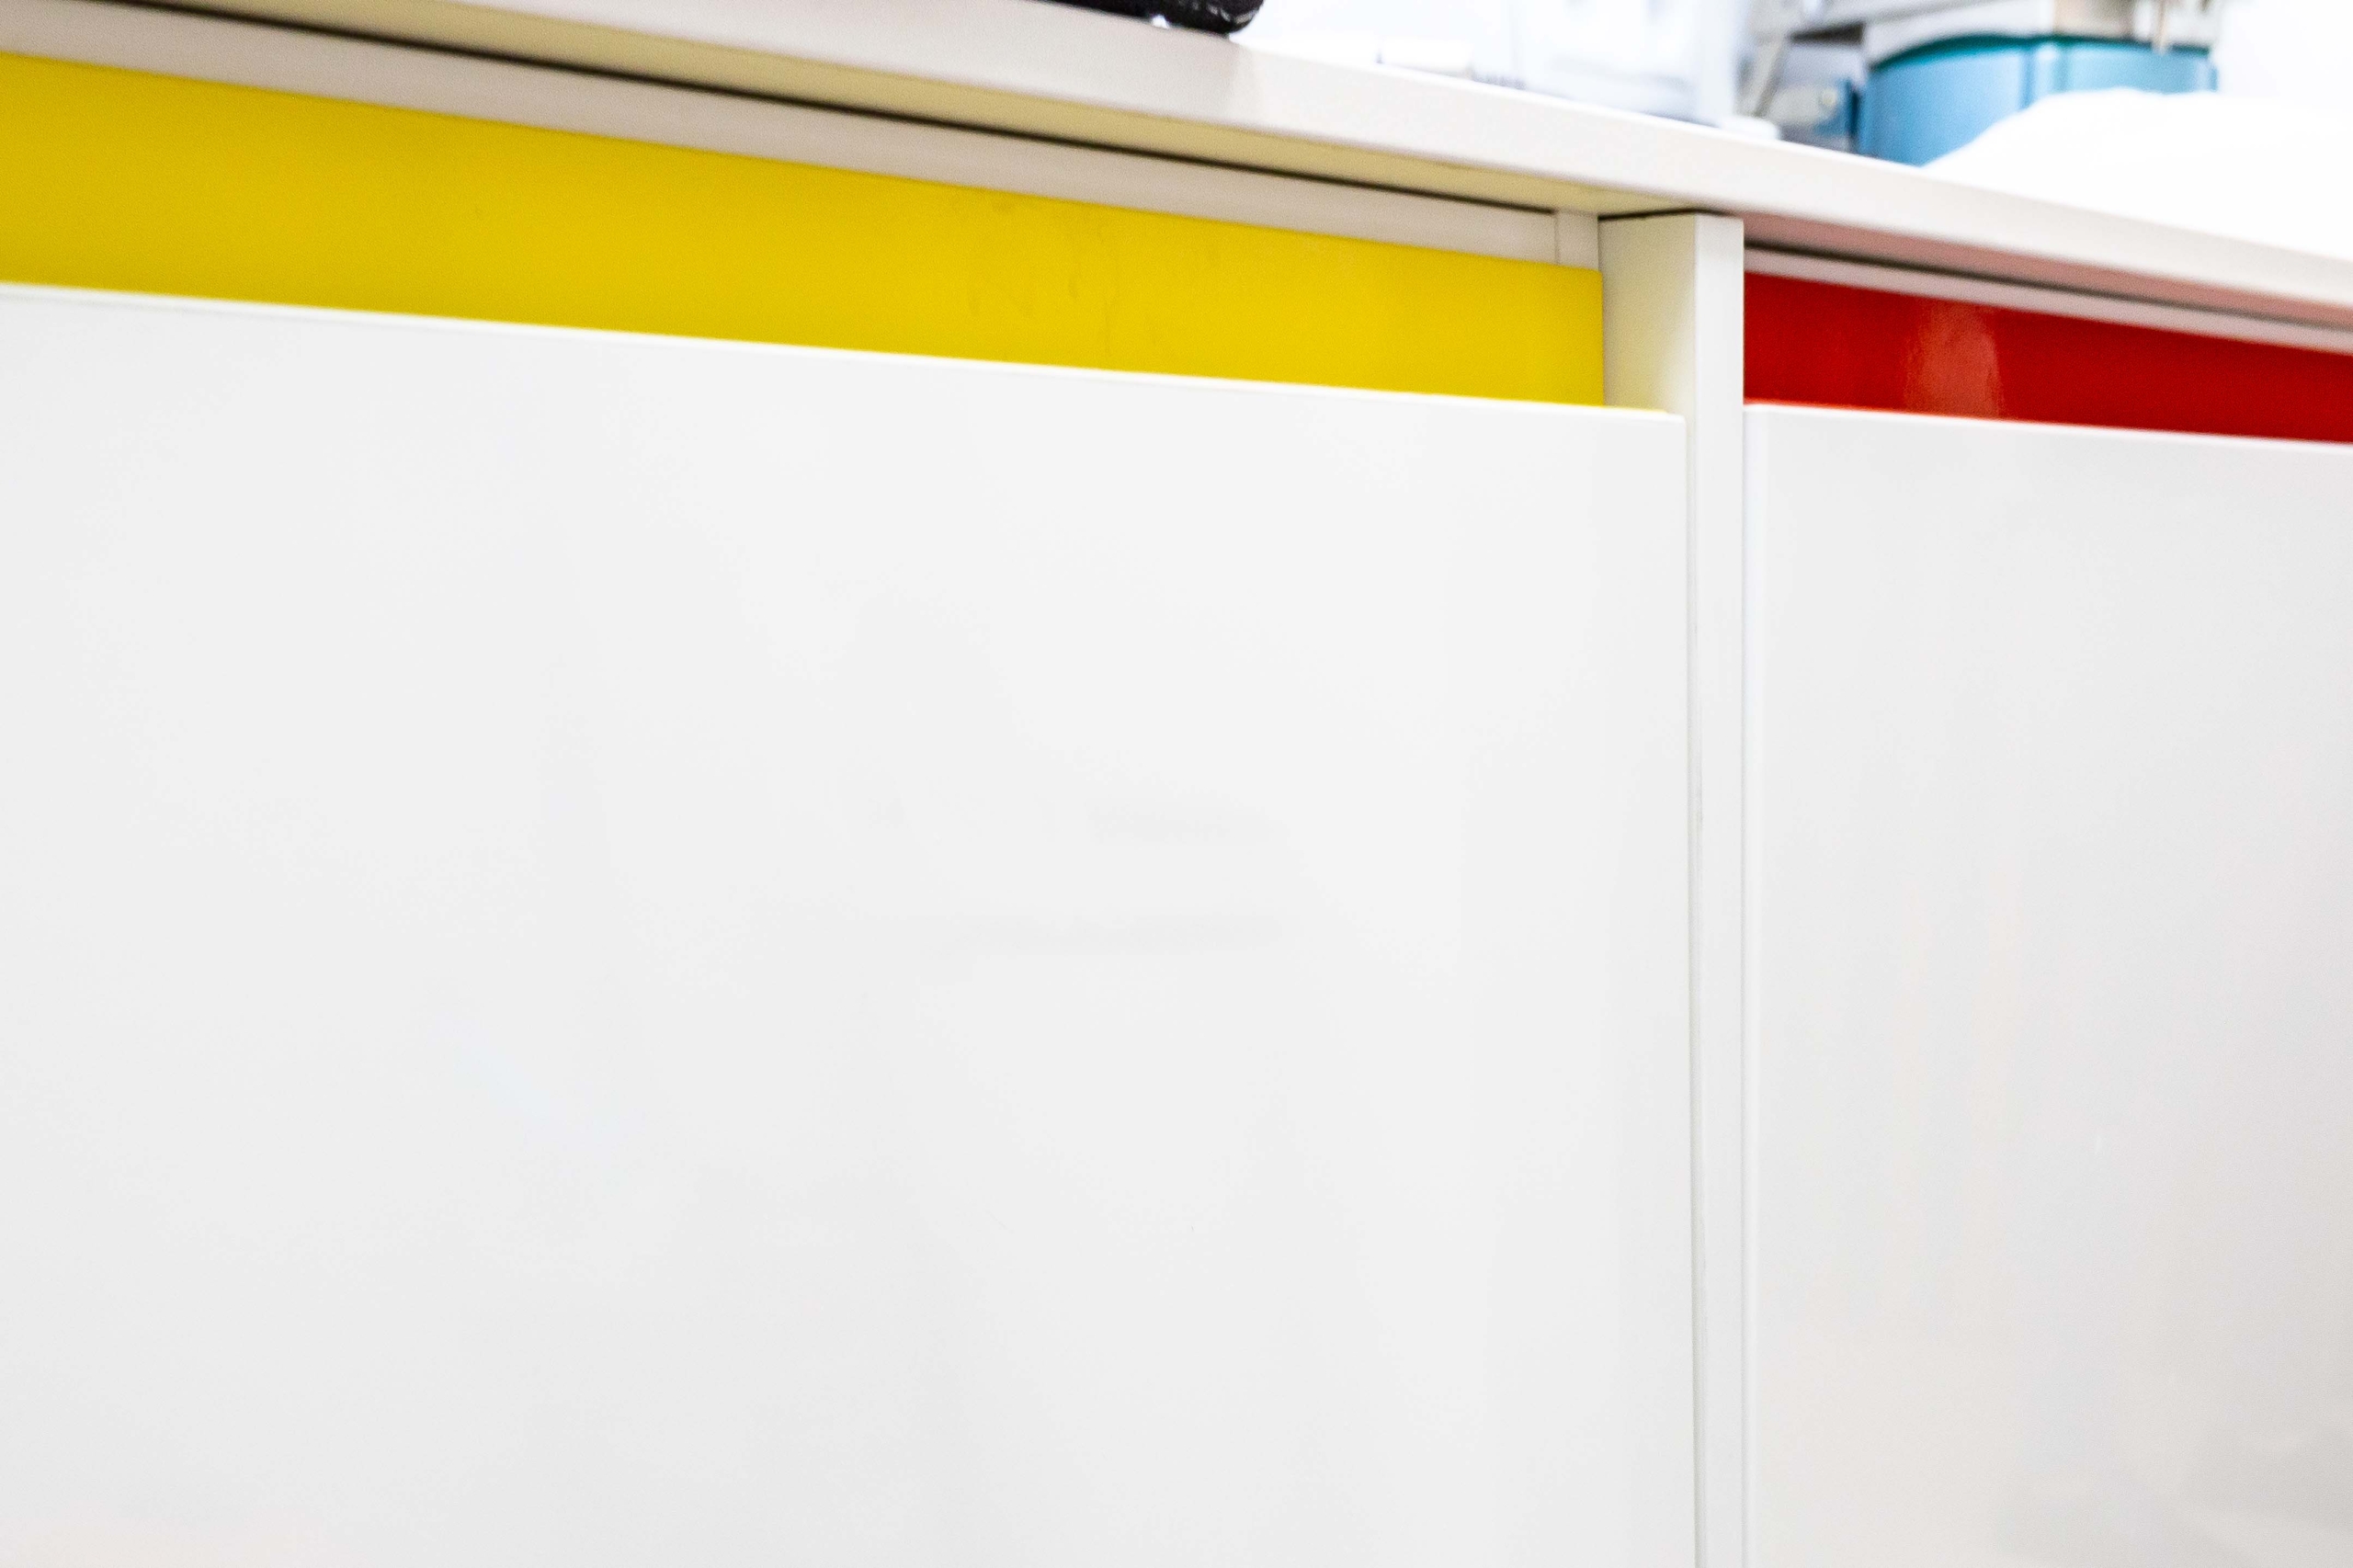 Mueble de mobiliario protesico de encimera color en blanco, amarillo y rojo